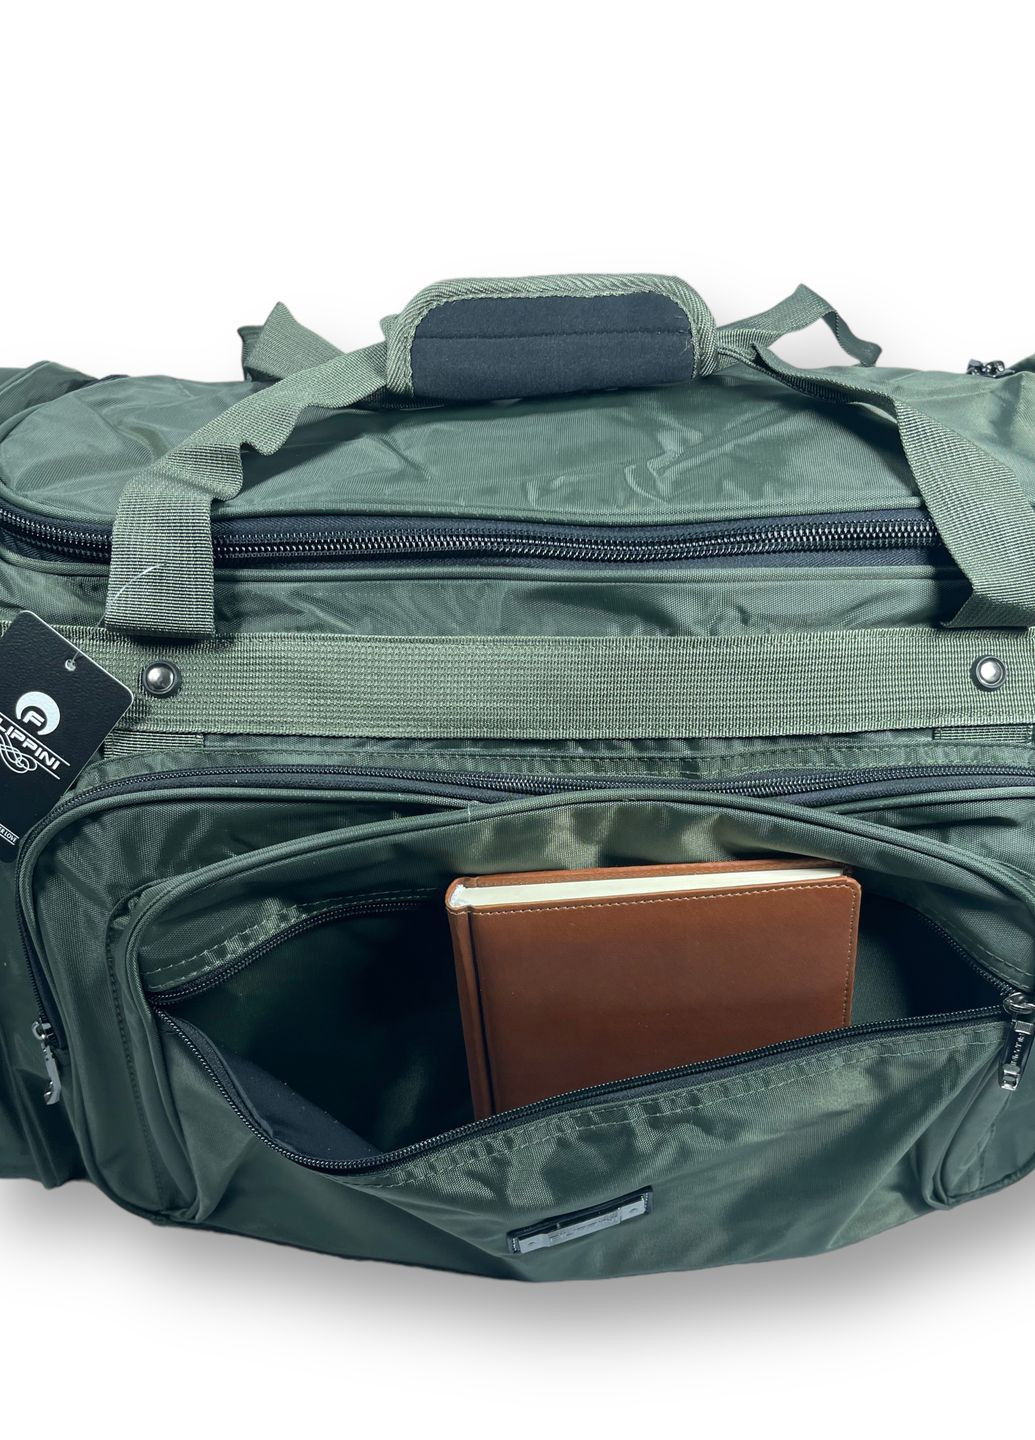 Дорожная сумка, 70 л, 1 отделение, 4 дополнительных кармана, размер: 65*35*30 см, зеленый Filippini (285815045)